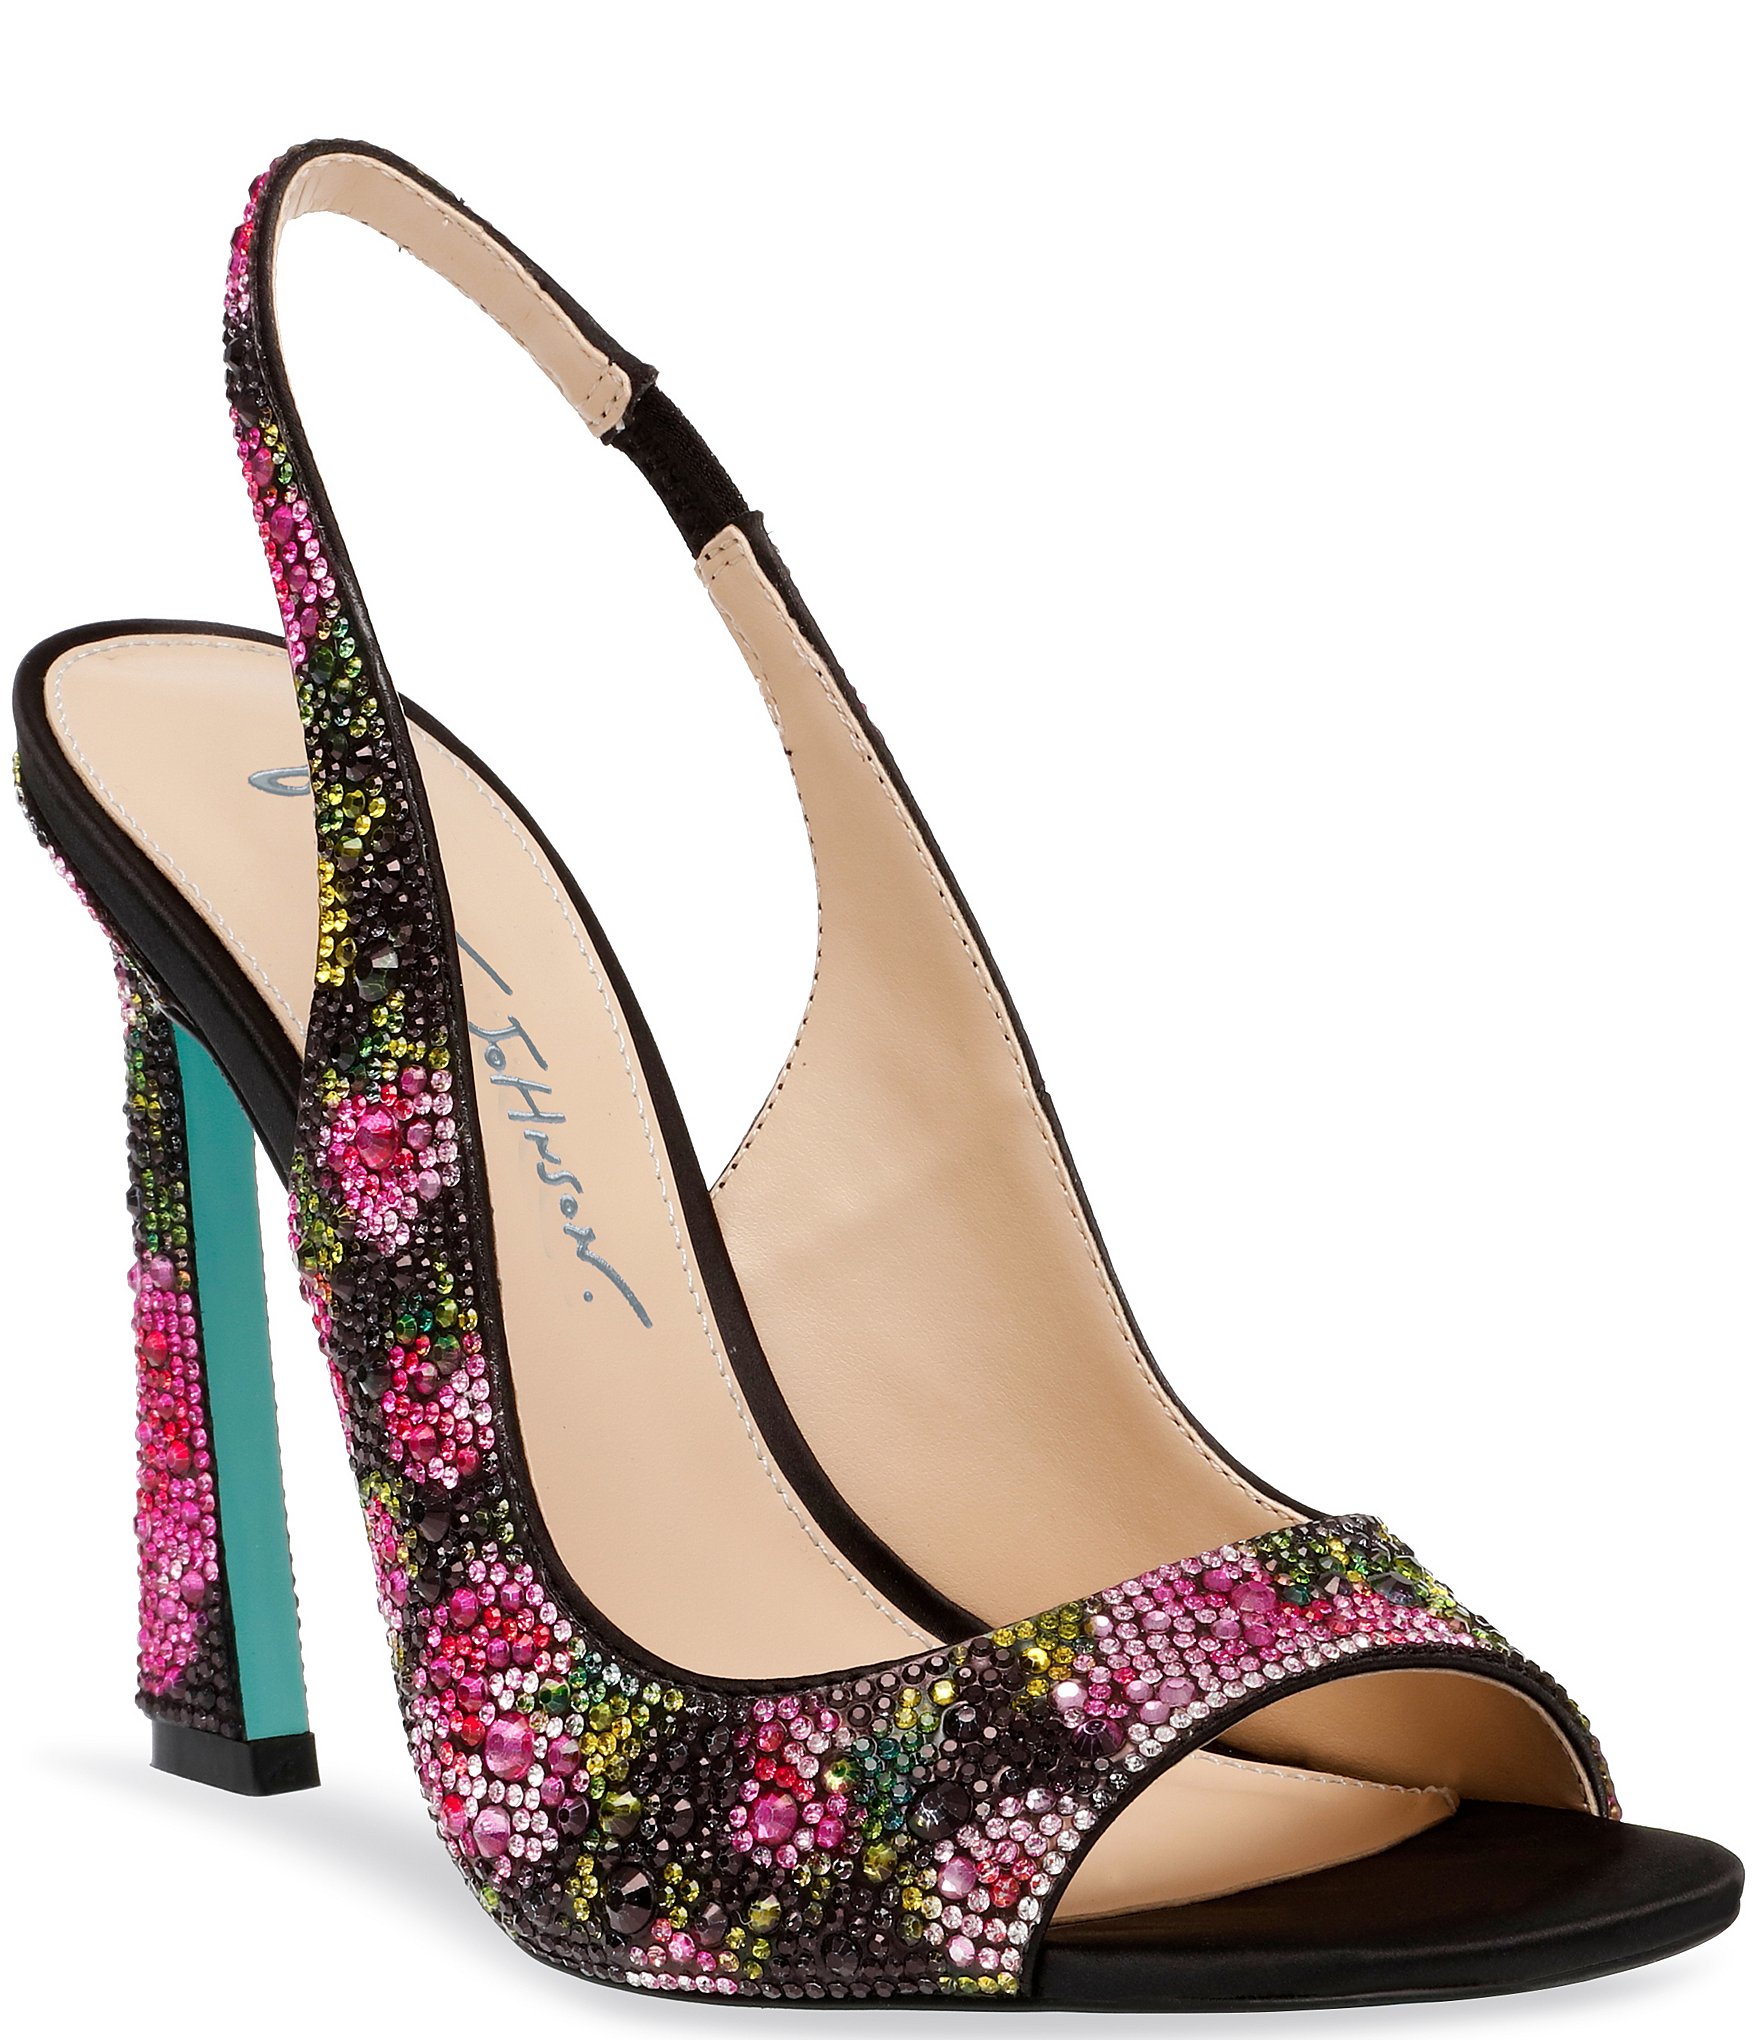 Women's floral heels | Floral heels, Heels, Shoes women heels